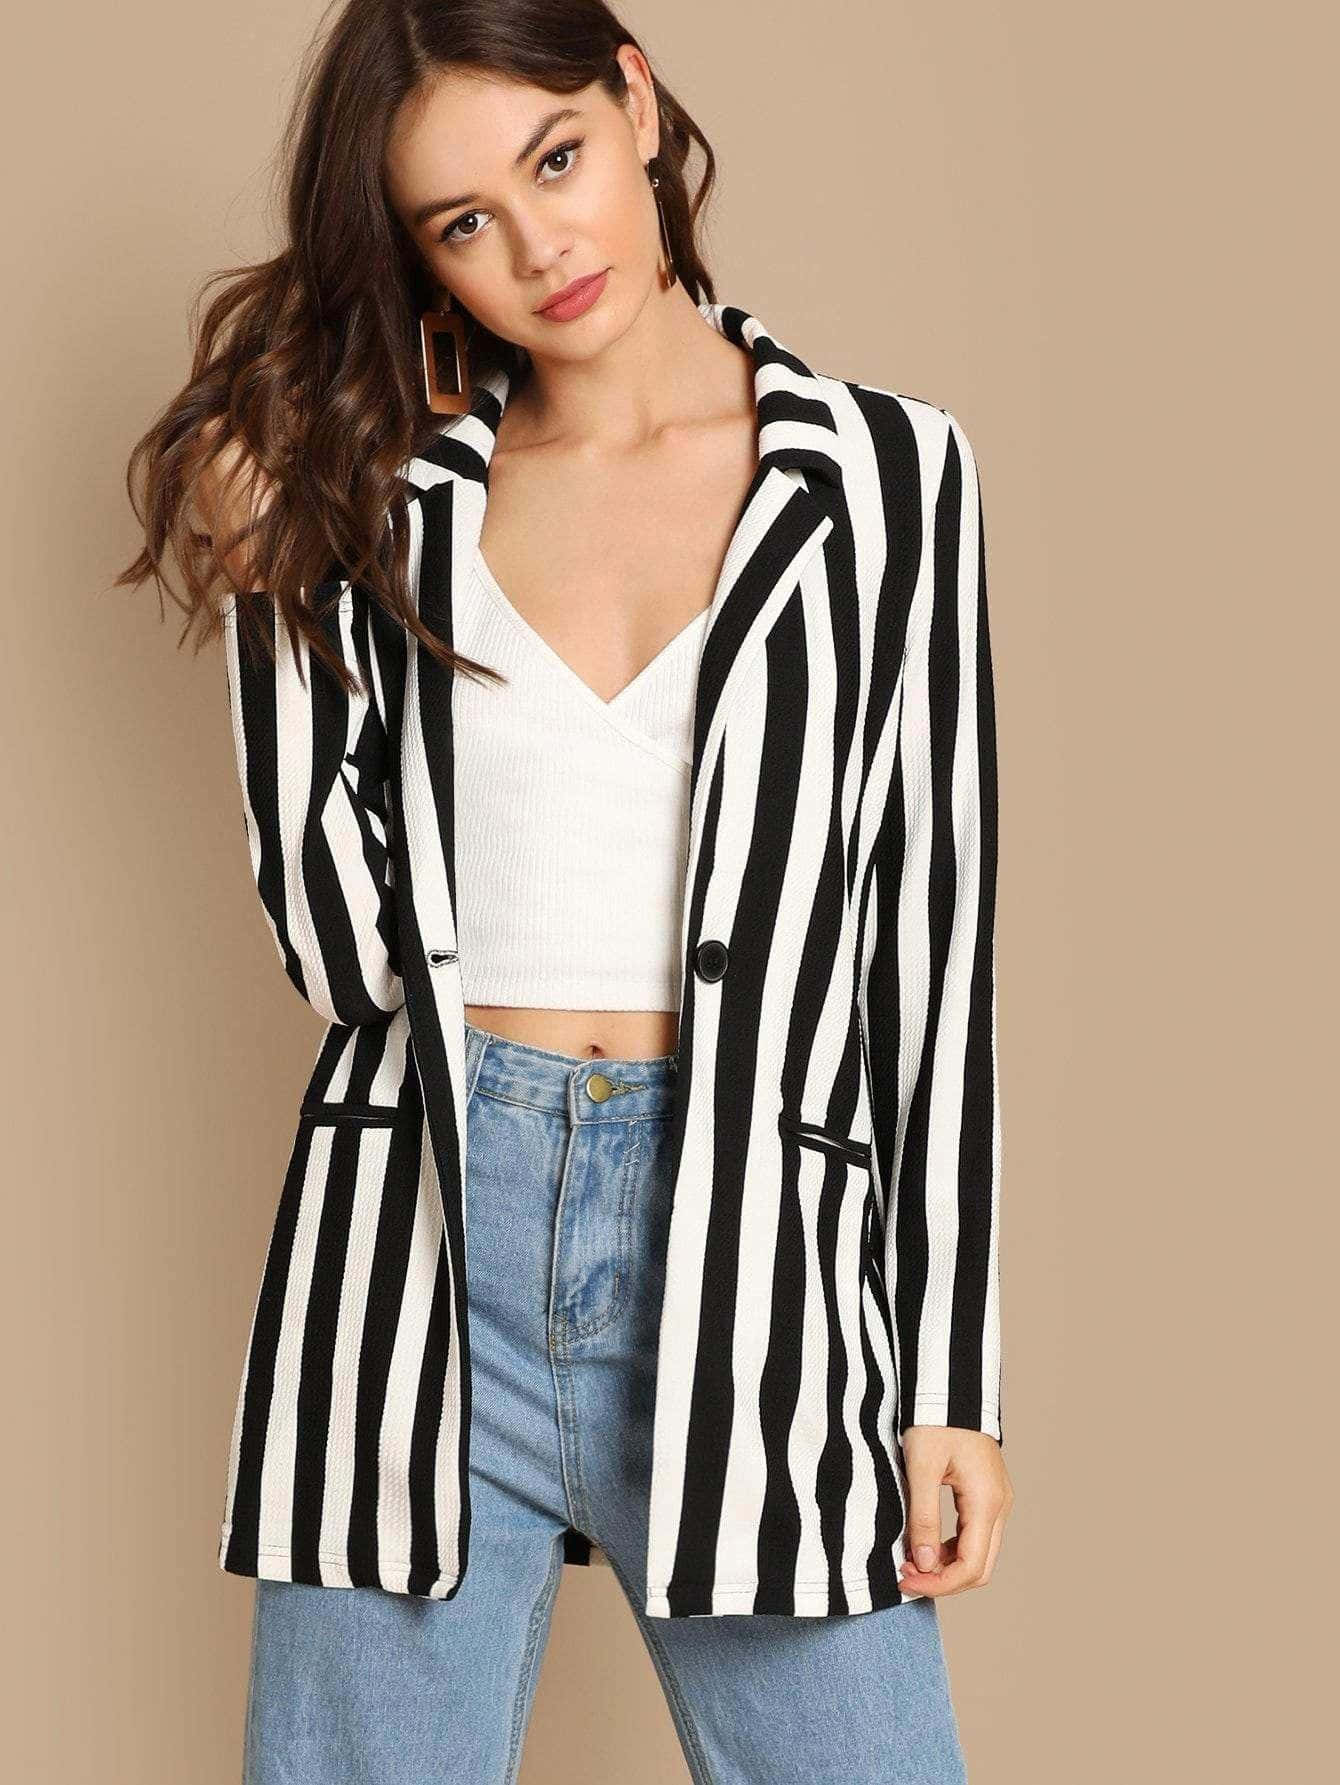 Black And White Striped Blazer Picture